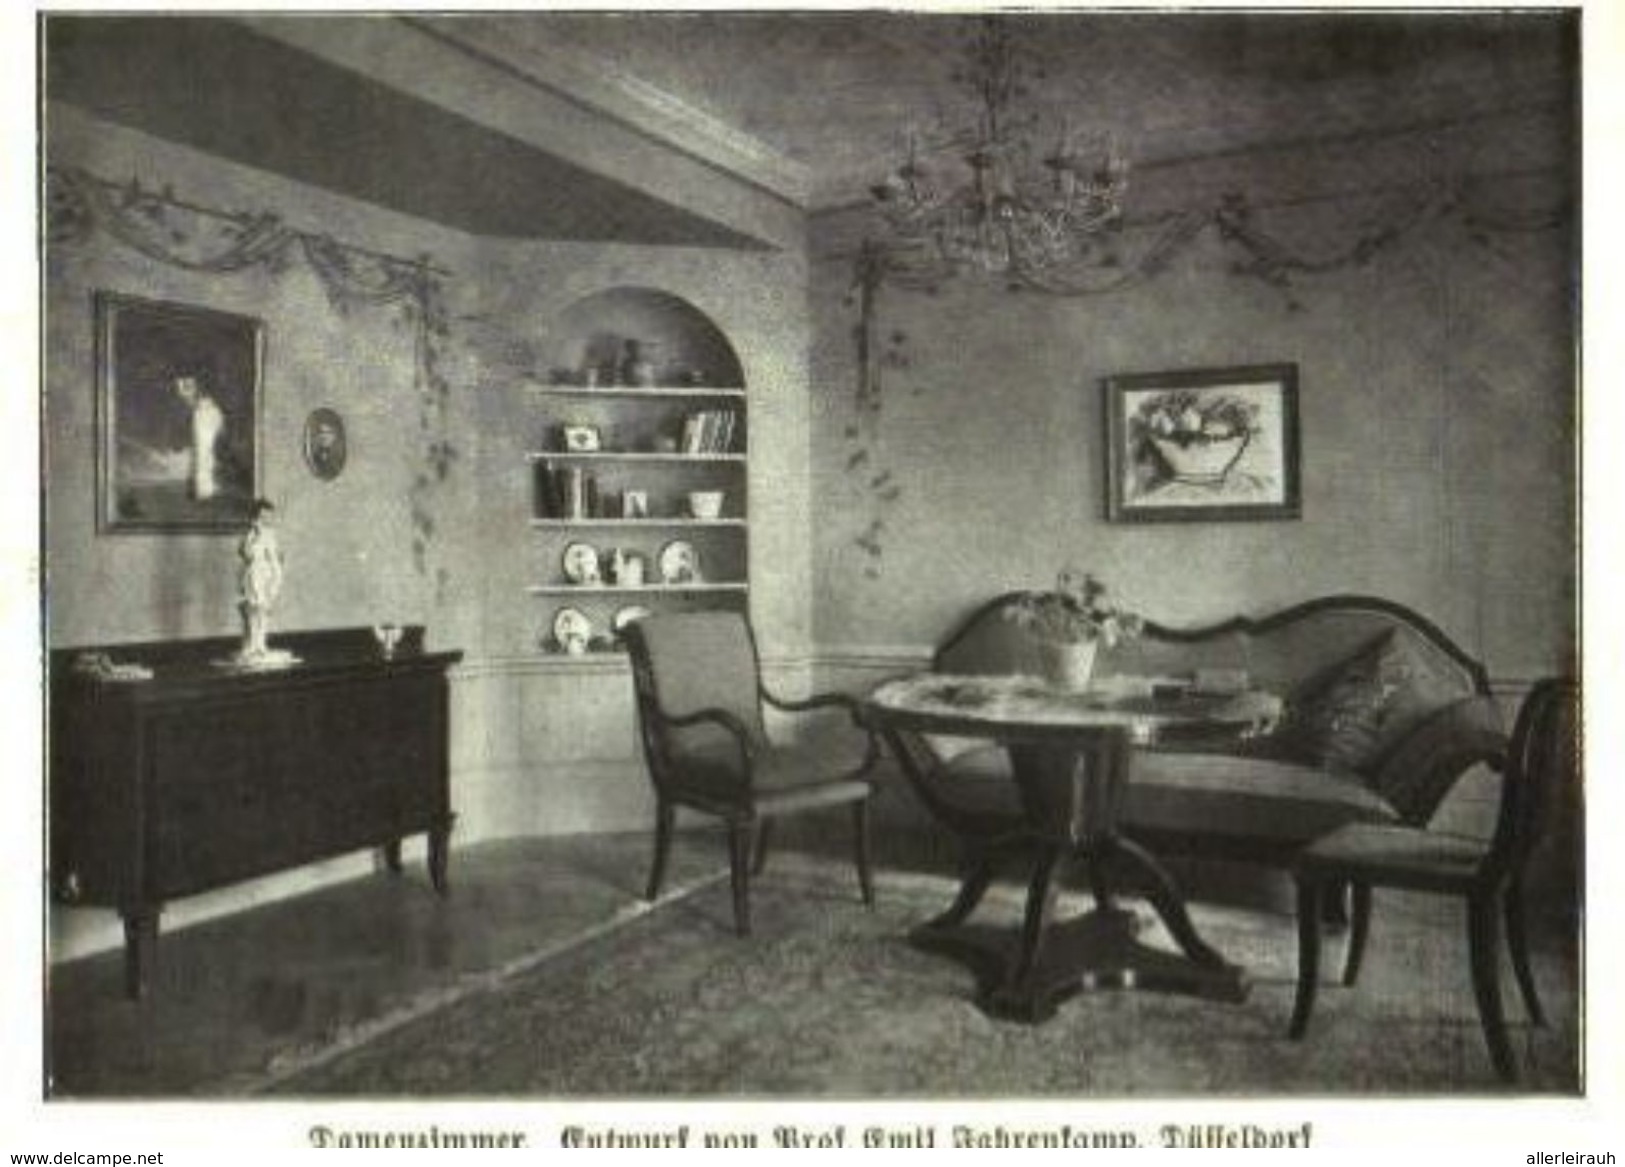 Damenzimmer (Entwurf Von Professor Emil Fahrenkamp  / Druck, Entnommen Aus Zeitschrift /1924 - Paketten